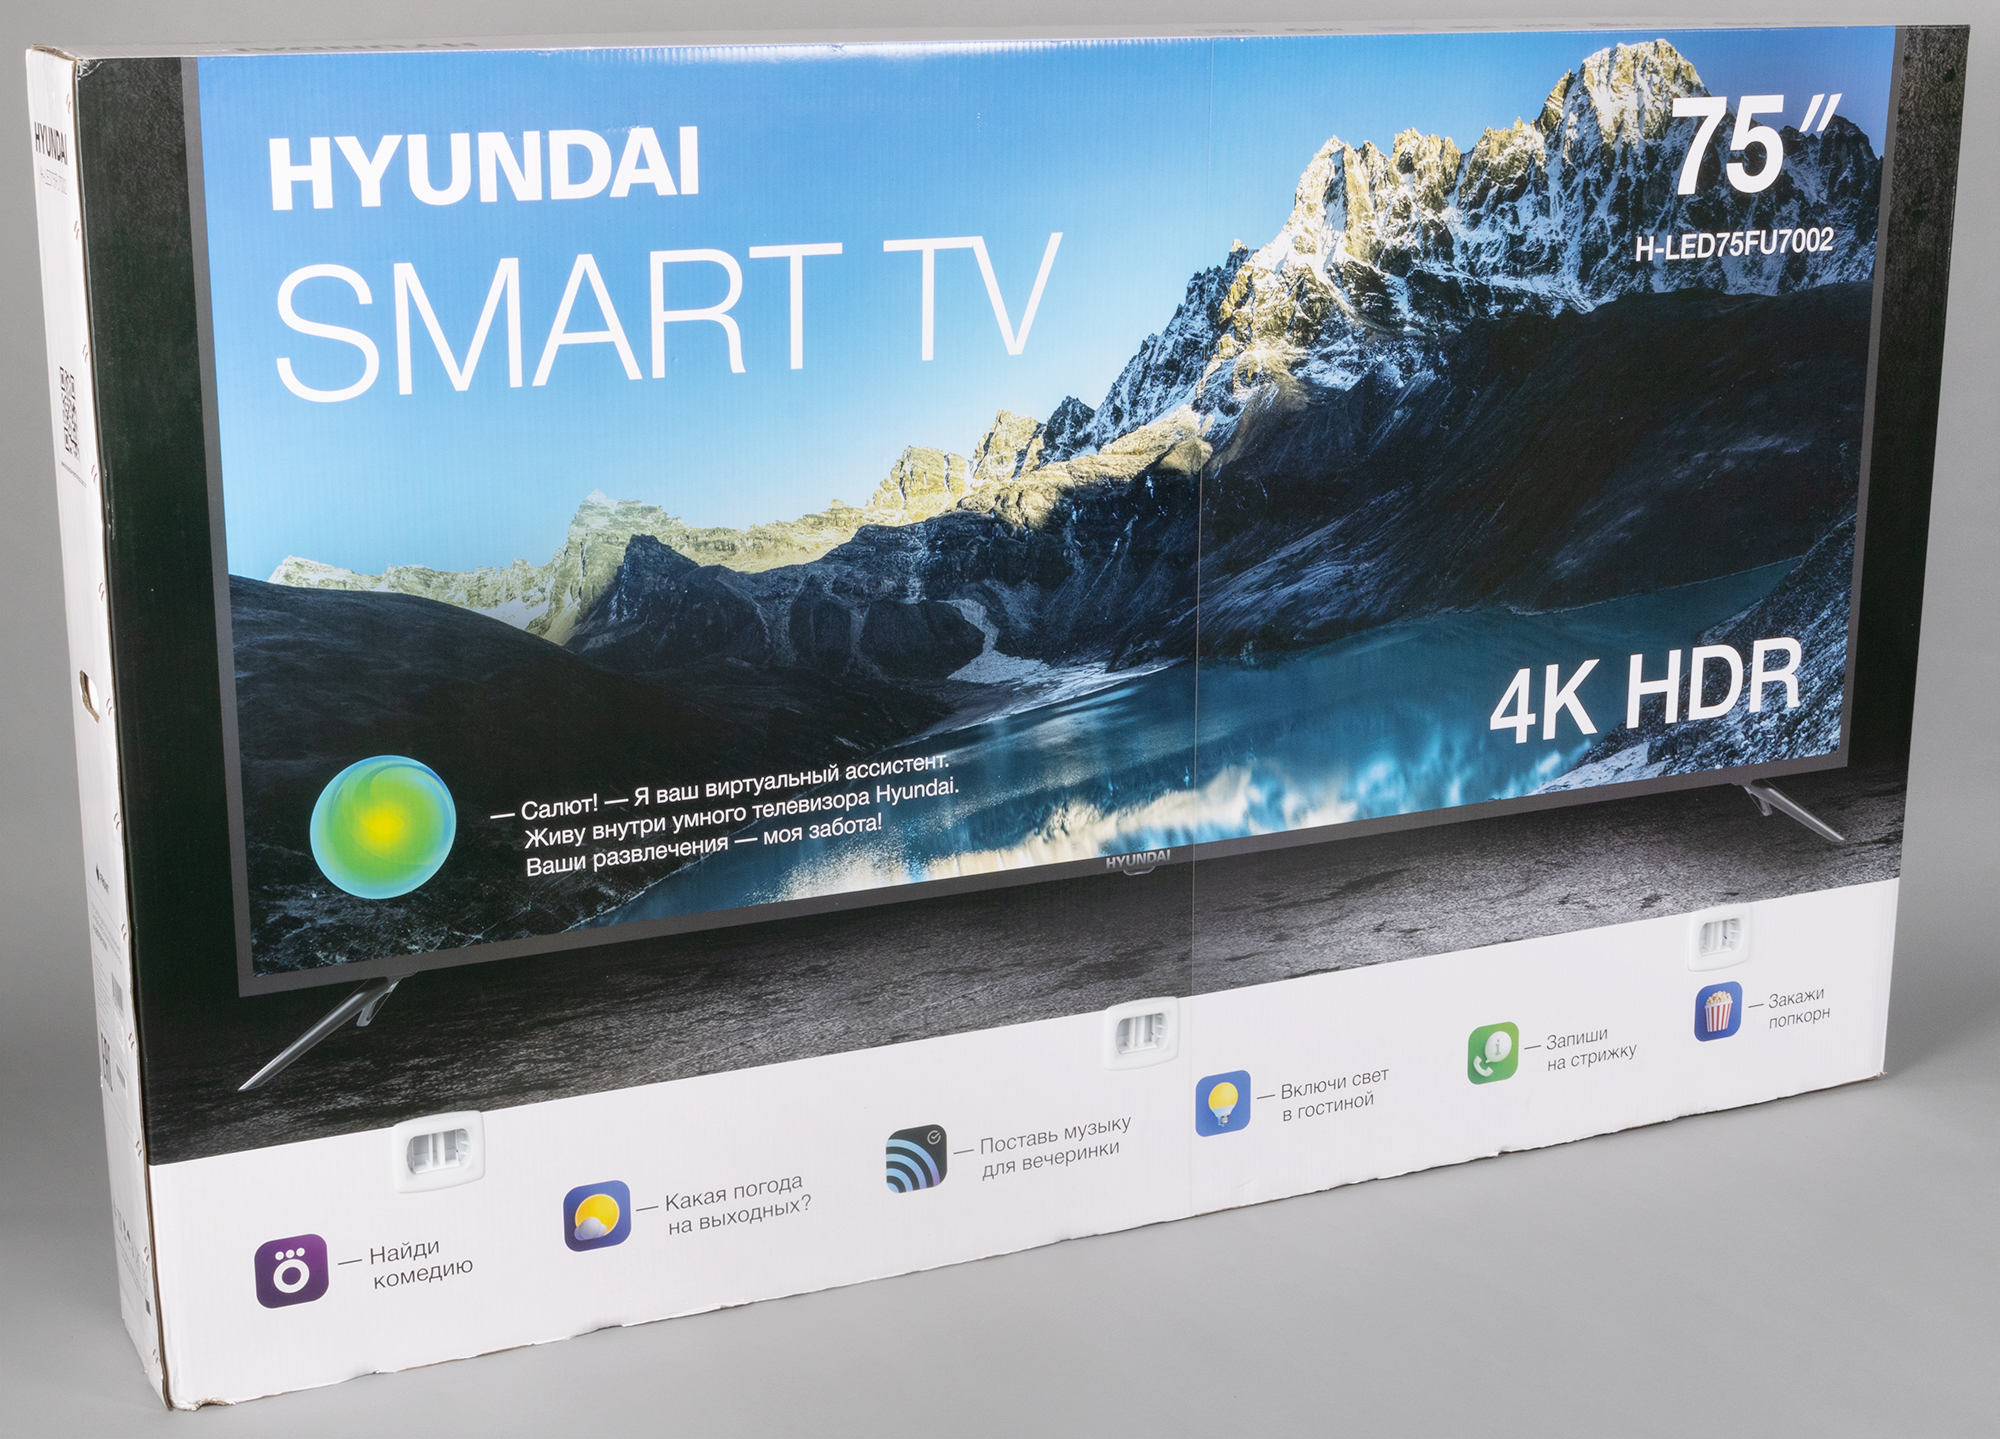 Led43bu7003 телевизор hyundai. Hyundai h-led75fu7002 led. Hyundai h-led43bu7003. Телевизор 75 дюймов Хундай.